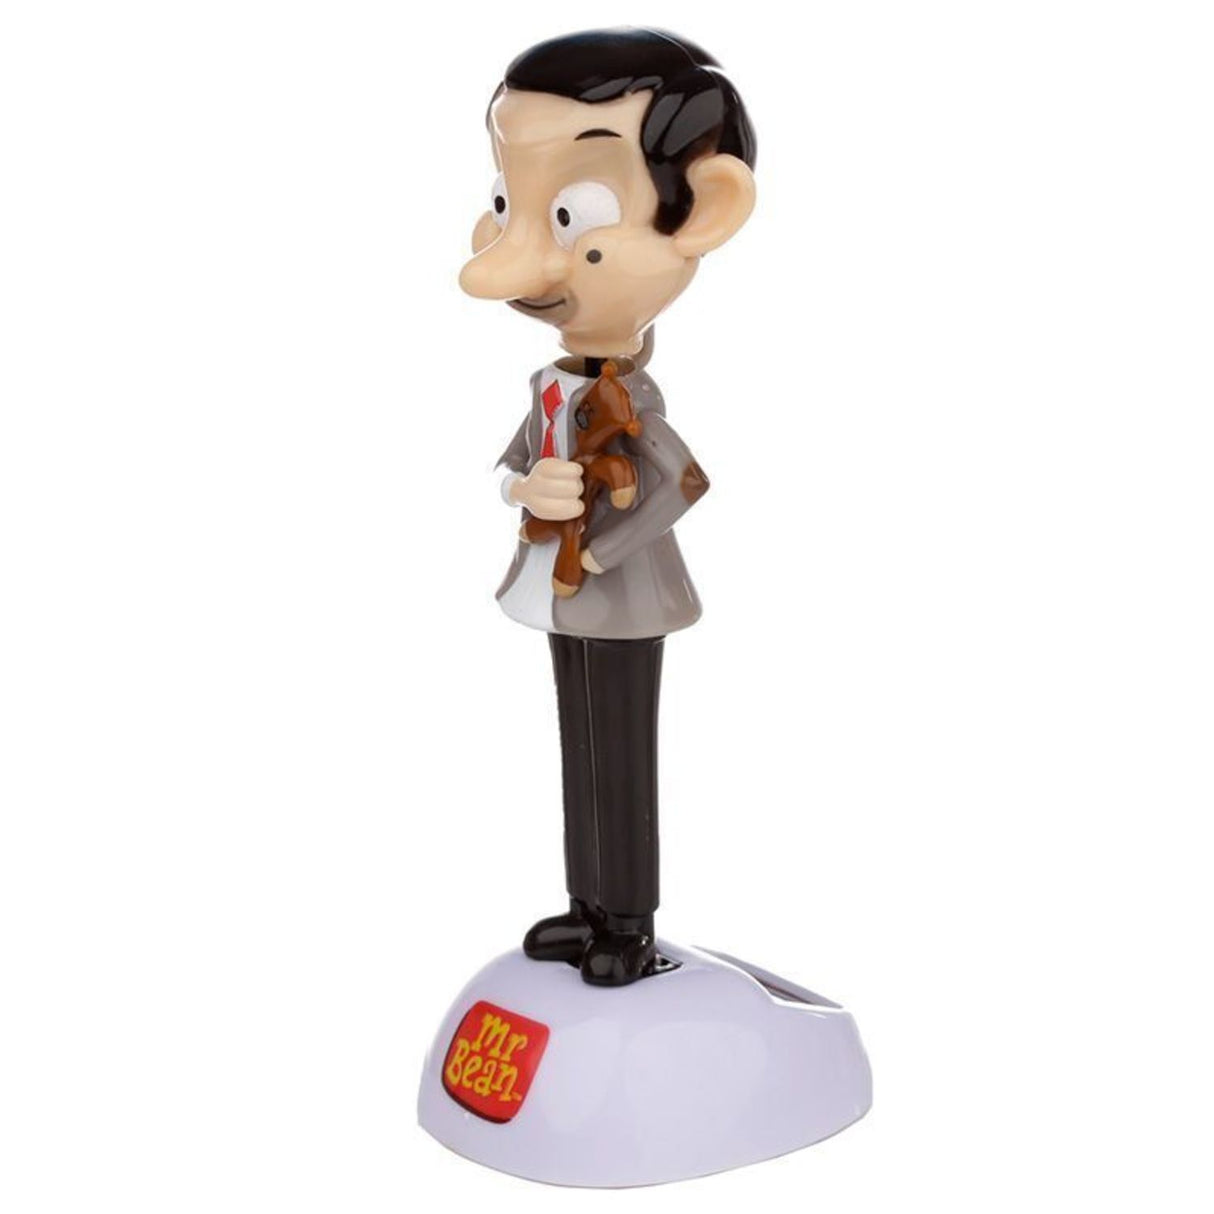 Mr. Bean Solarfigur - Jetzt kaufen und fröhlich wackeln! –